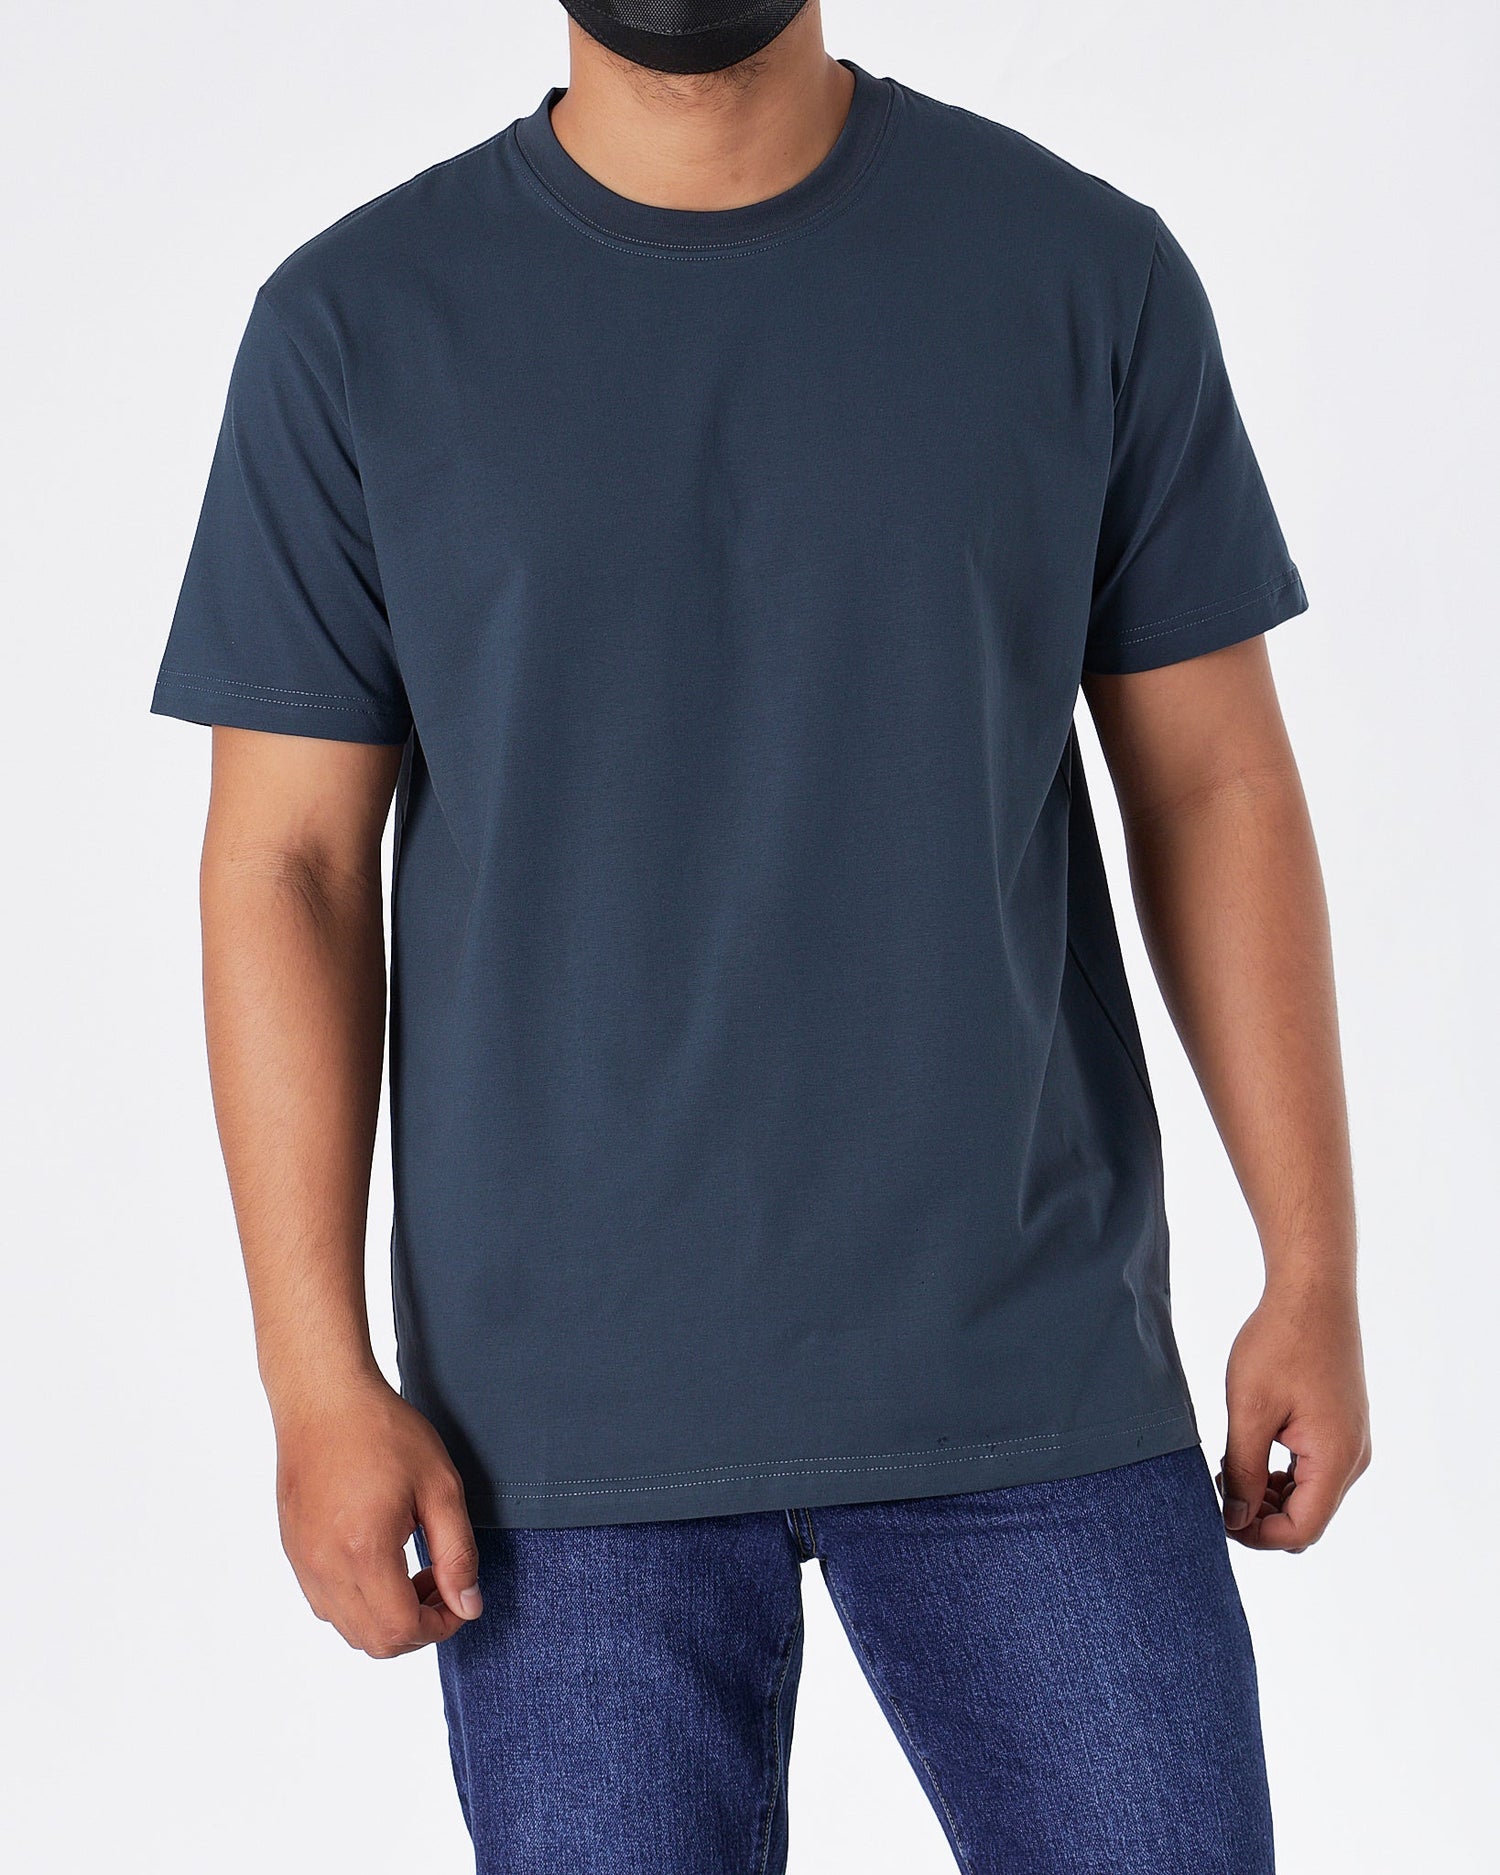 MOI OUTFIT-ABA Plain Color Men Blue T-Shirt 14.90